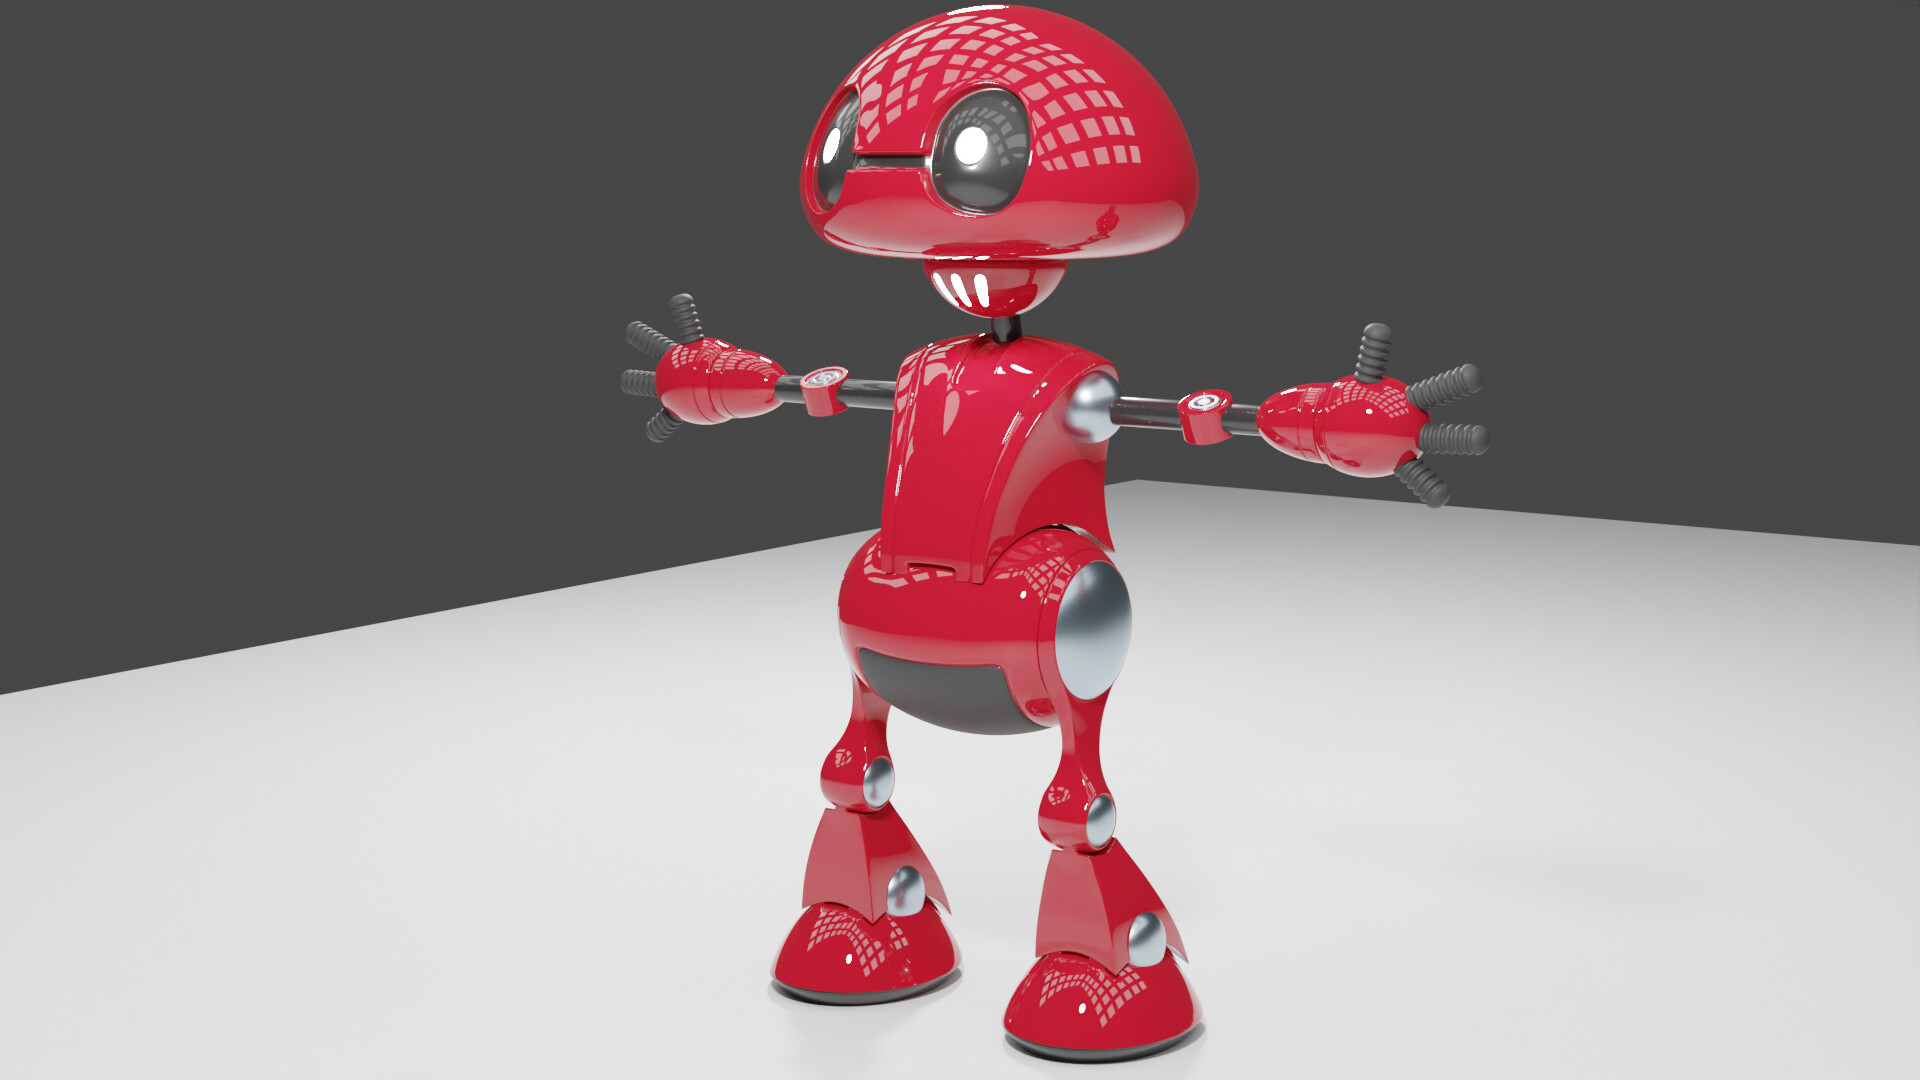 ArtStation - Robot Blender 3D